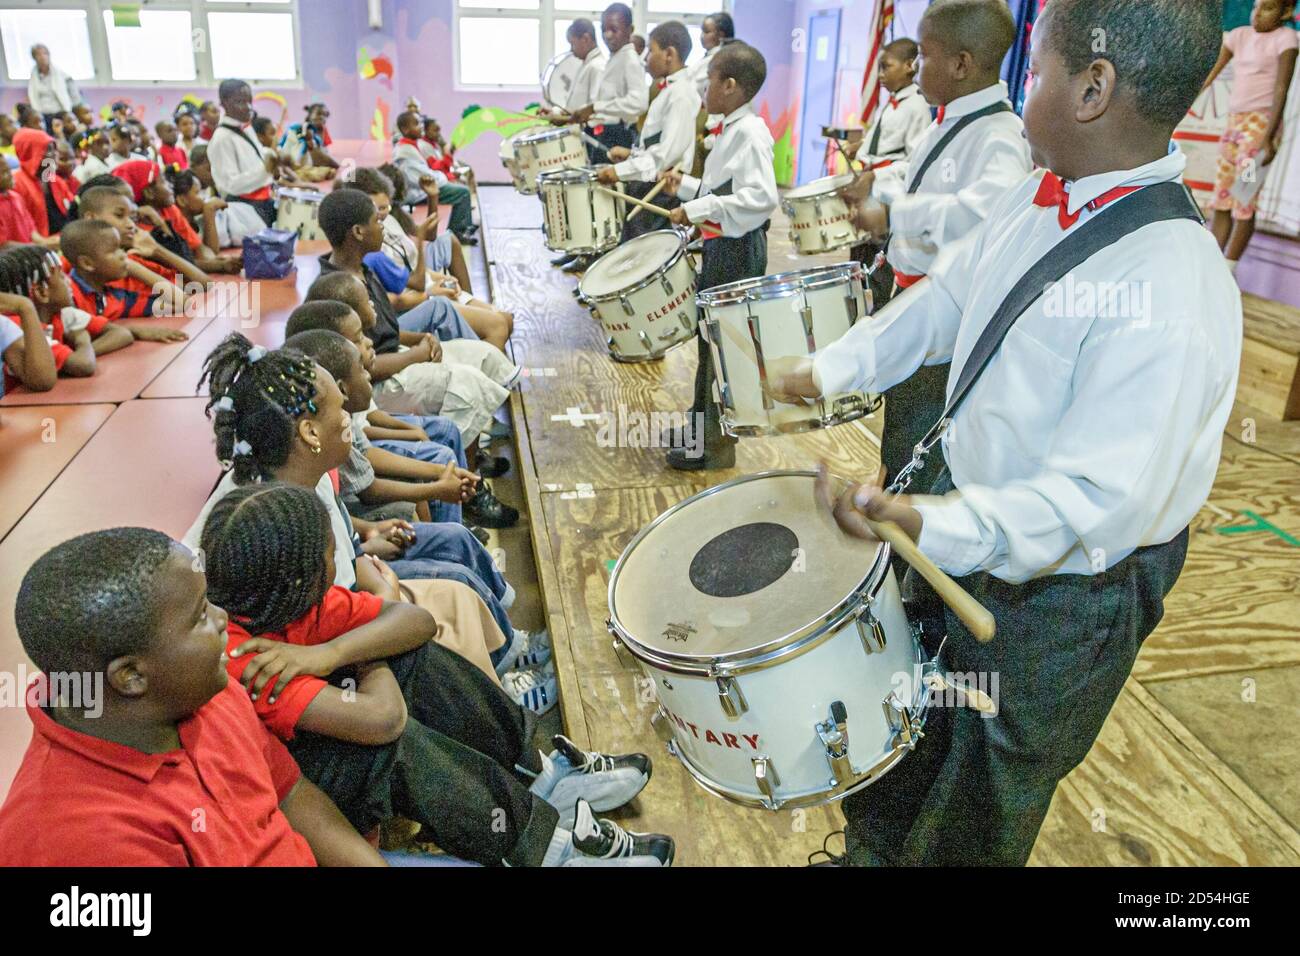 Miami Florida, Little Haiti Edison Park Elementary School, programma anti droga della settimana del nastro rosso, spettacolo di peforming dei tamburi dell'evento di assemblaggio, Bla Foto Stock